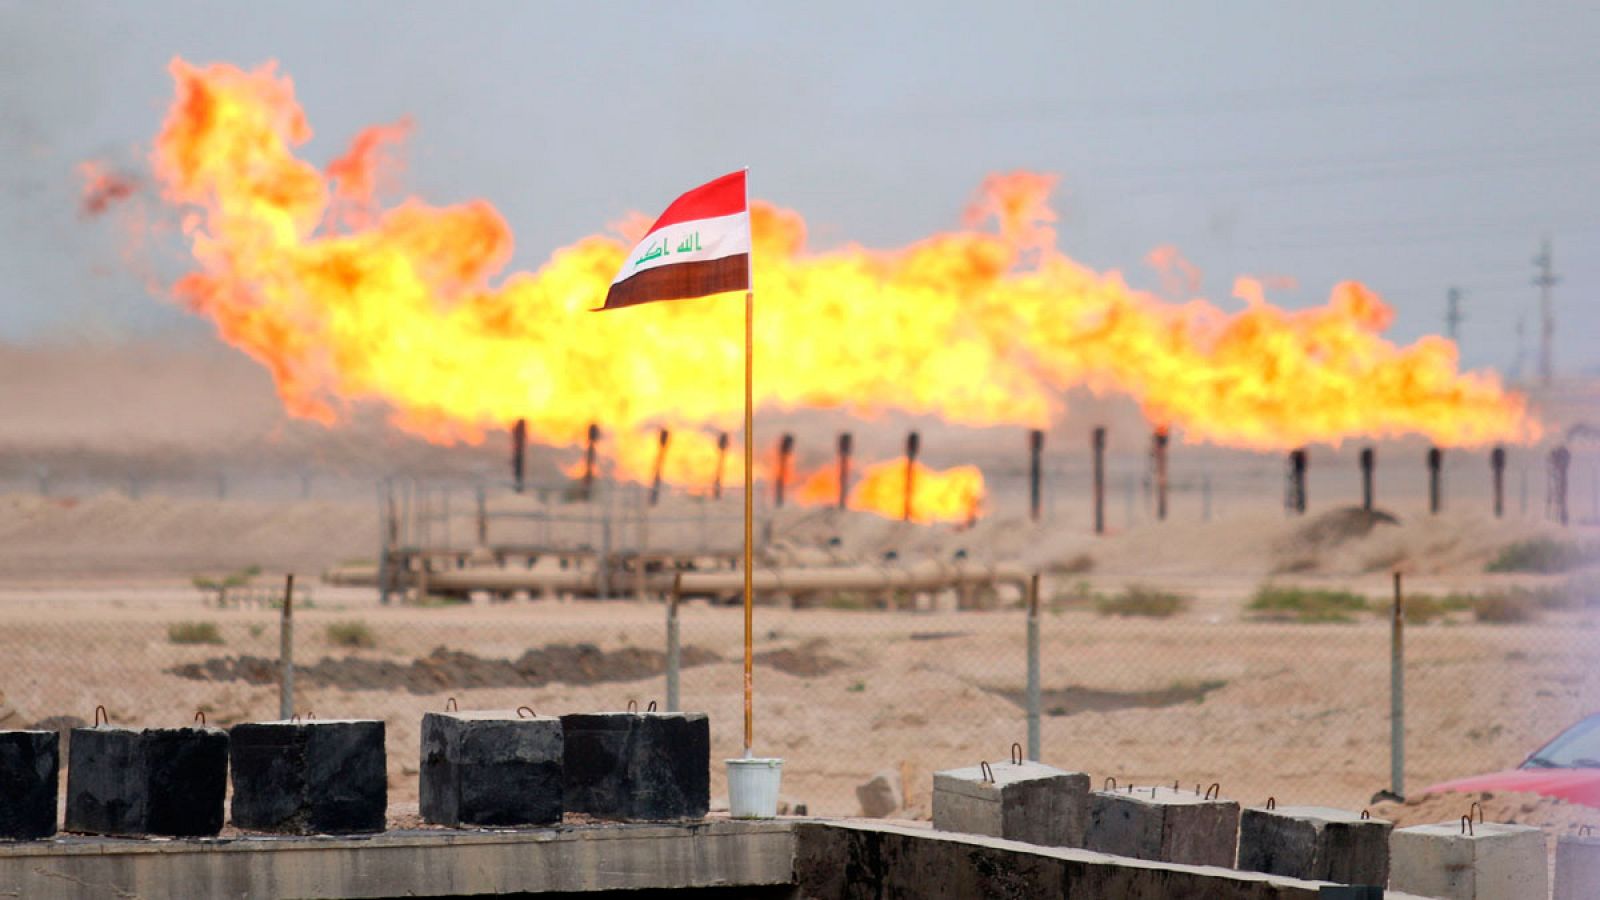 Oleoducto situado junto a una refinería de petróleo de Zubair, Irak